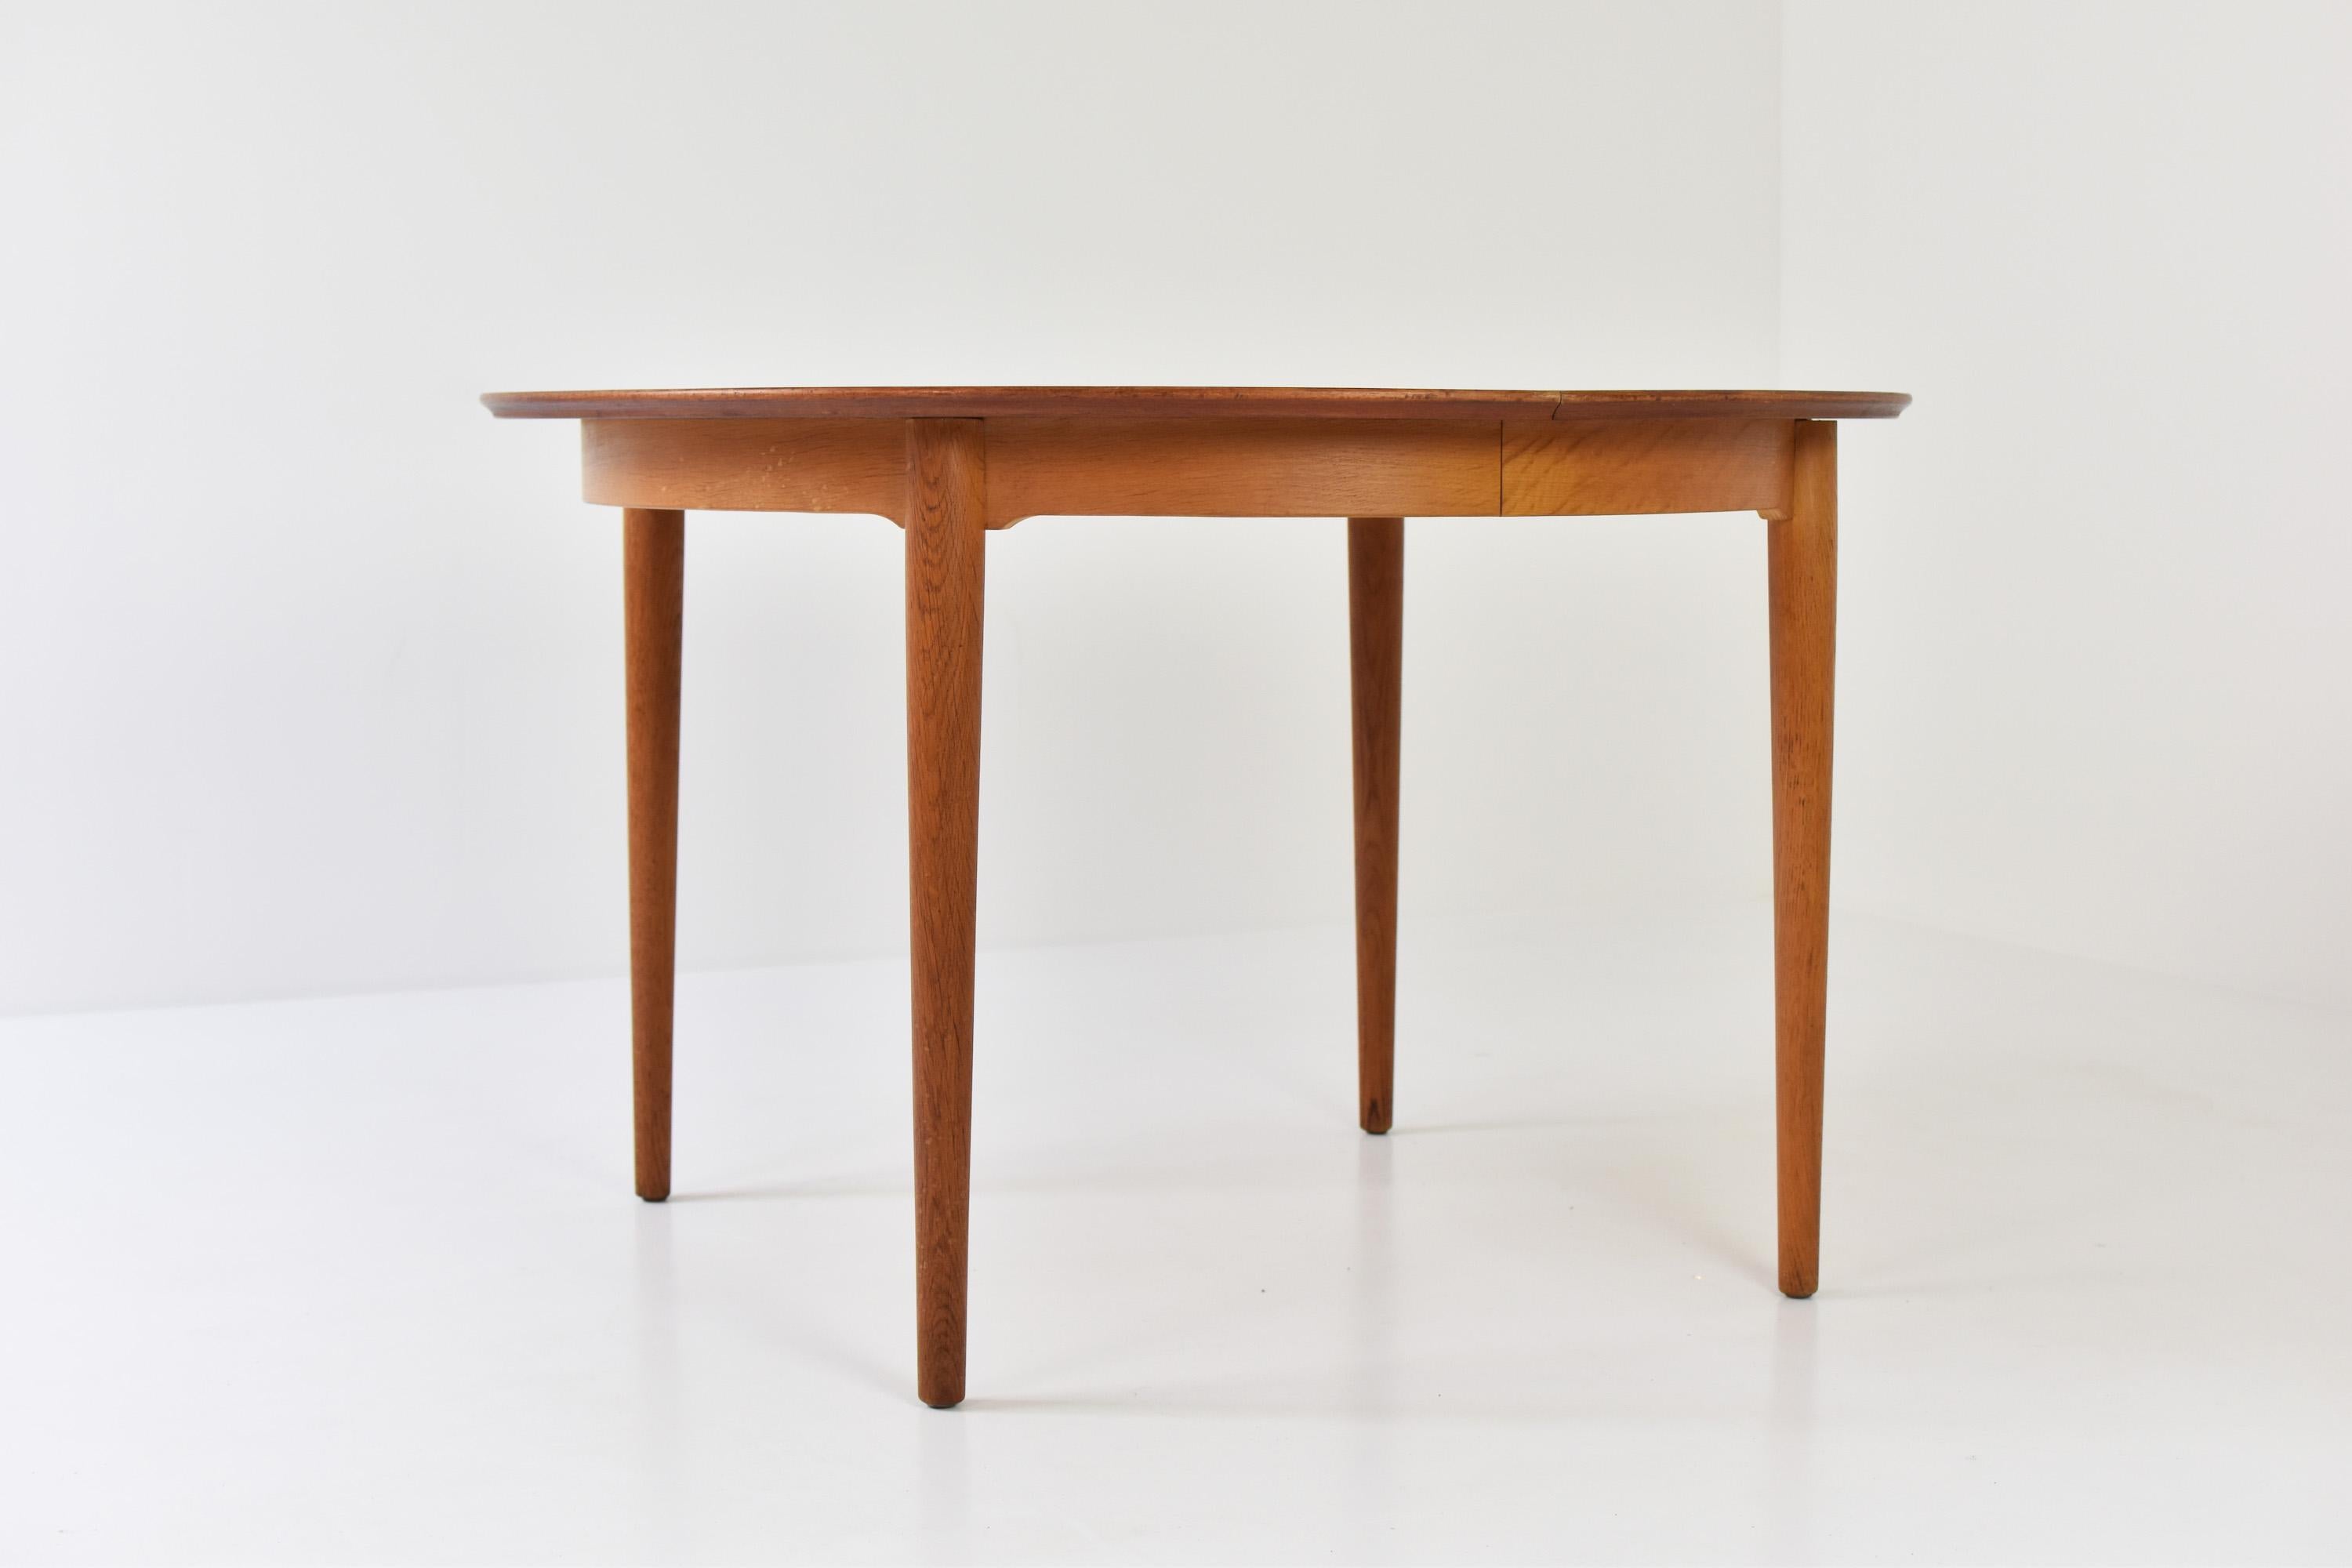 Scandinavian Modern Model No. 204 Dining Table by Arne Vodder for Sibast Mobler, Denmark, 1955